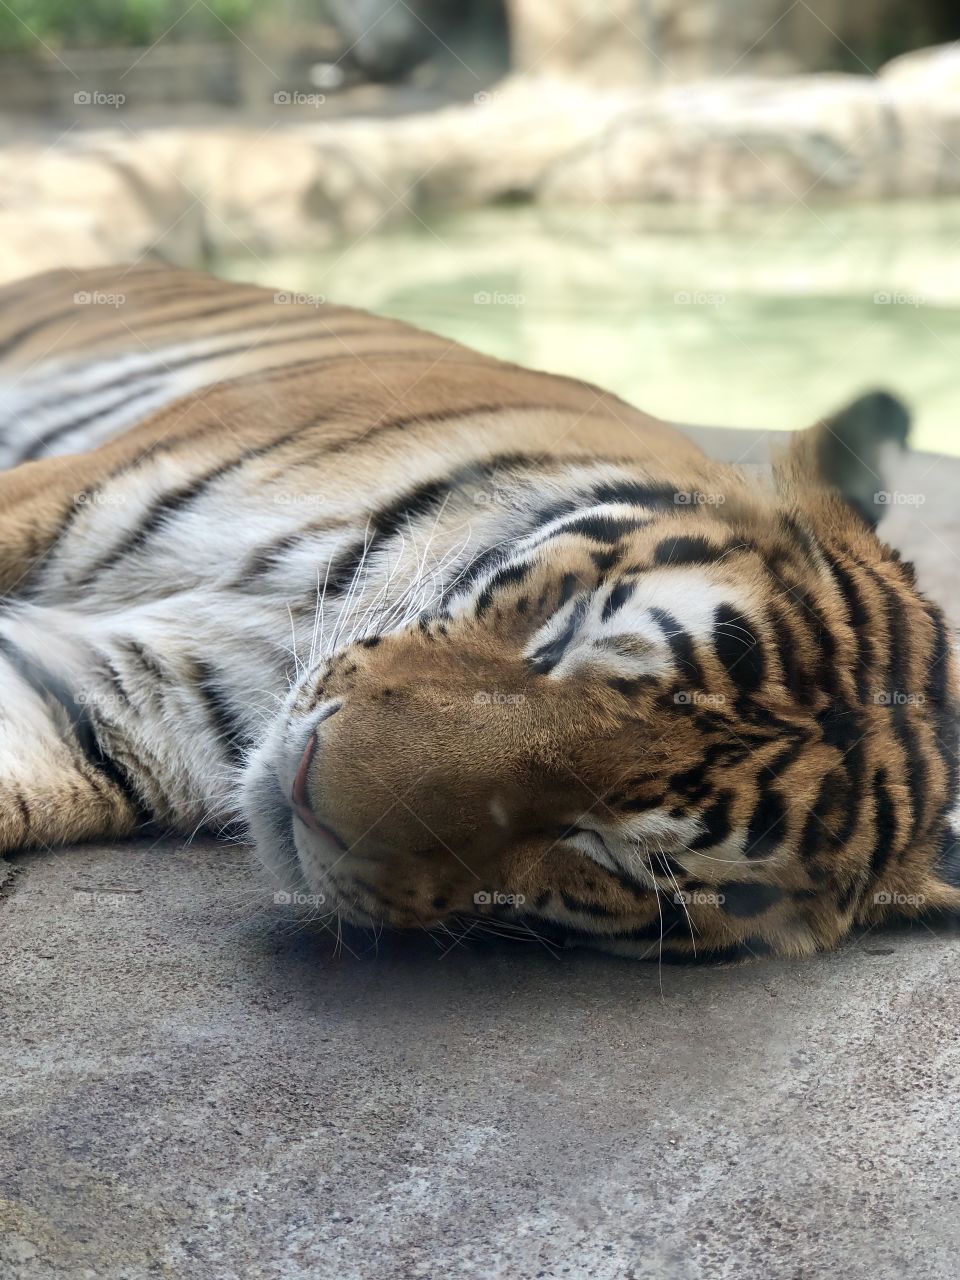 Tiger enjoying a snooze at the Indianapolis Zoo 